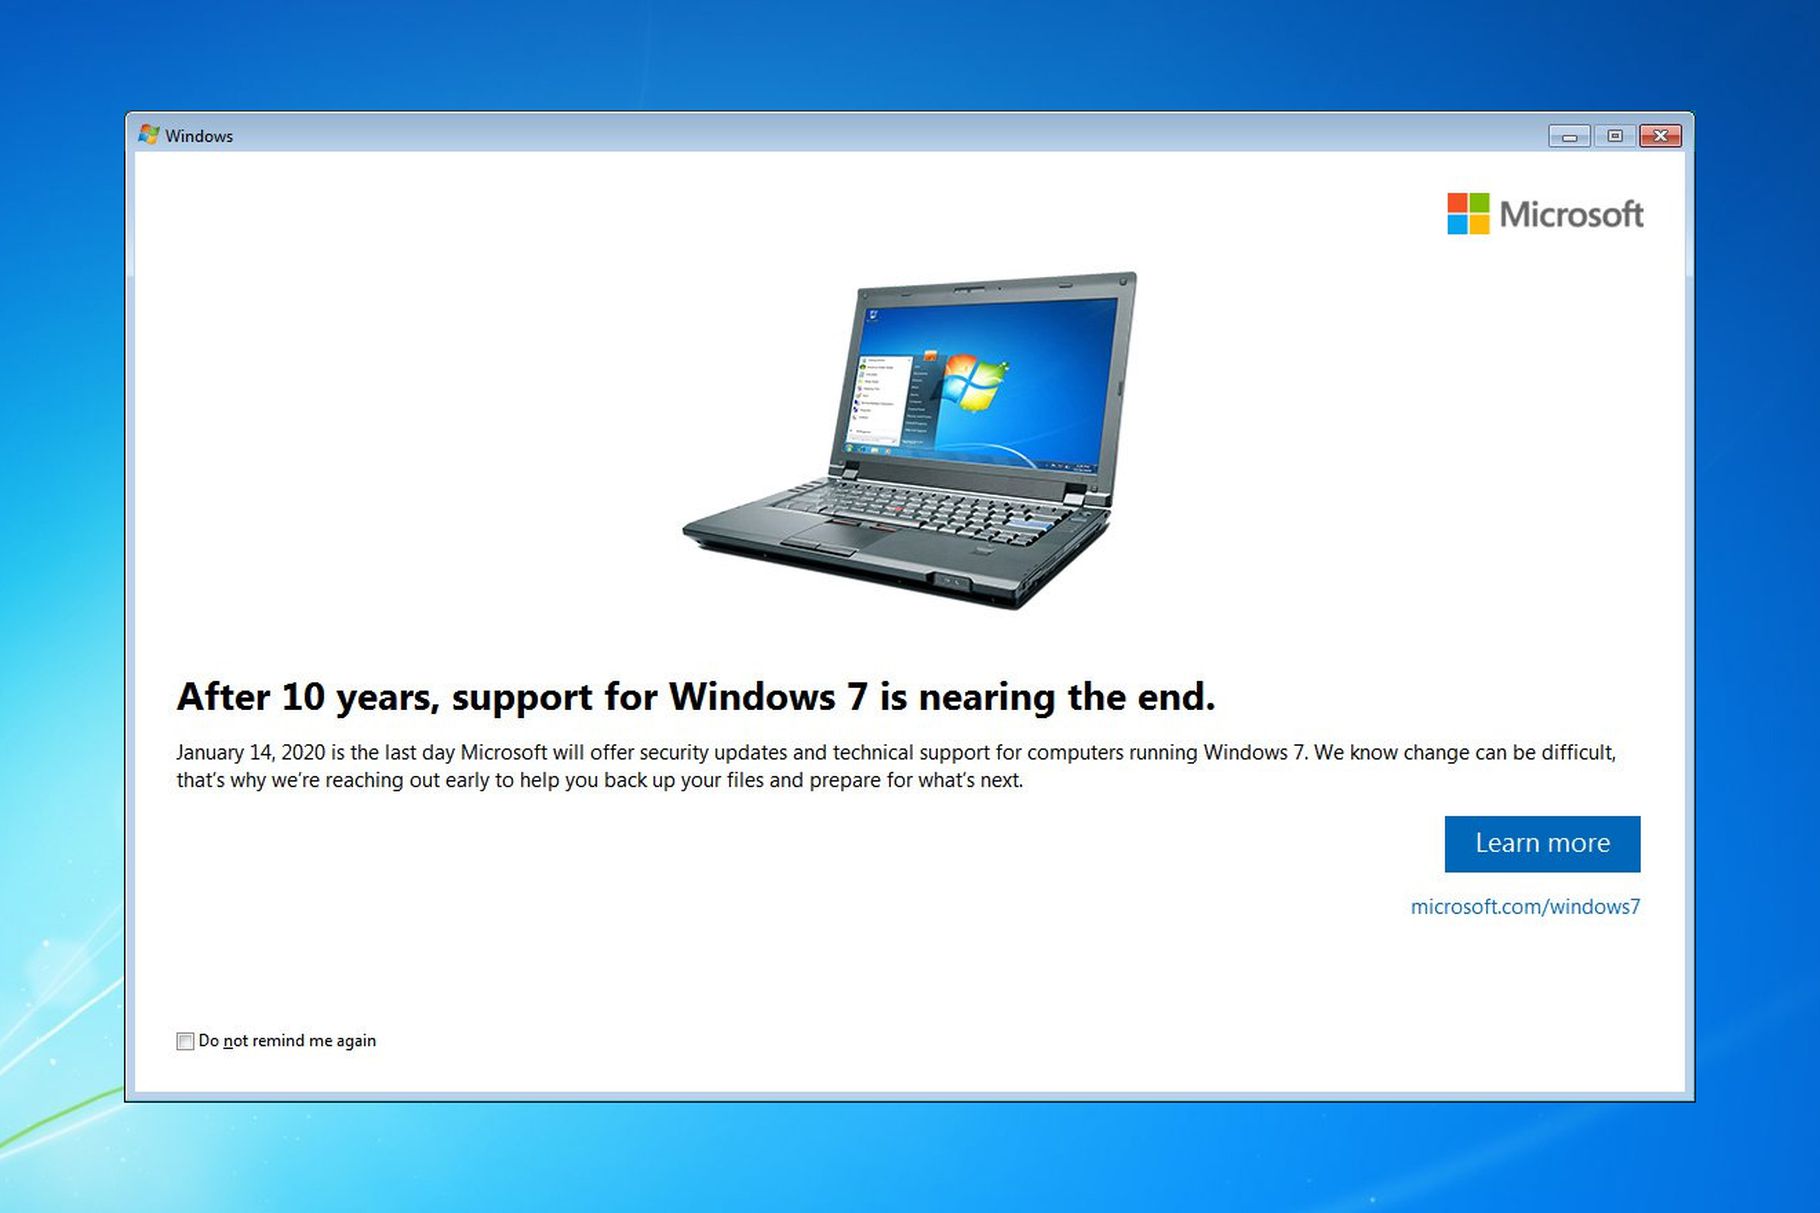 Anh em có ấn tượng gì với Windows 7? Comment vô đây nhé